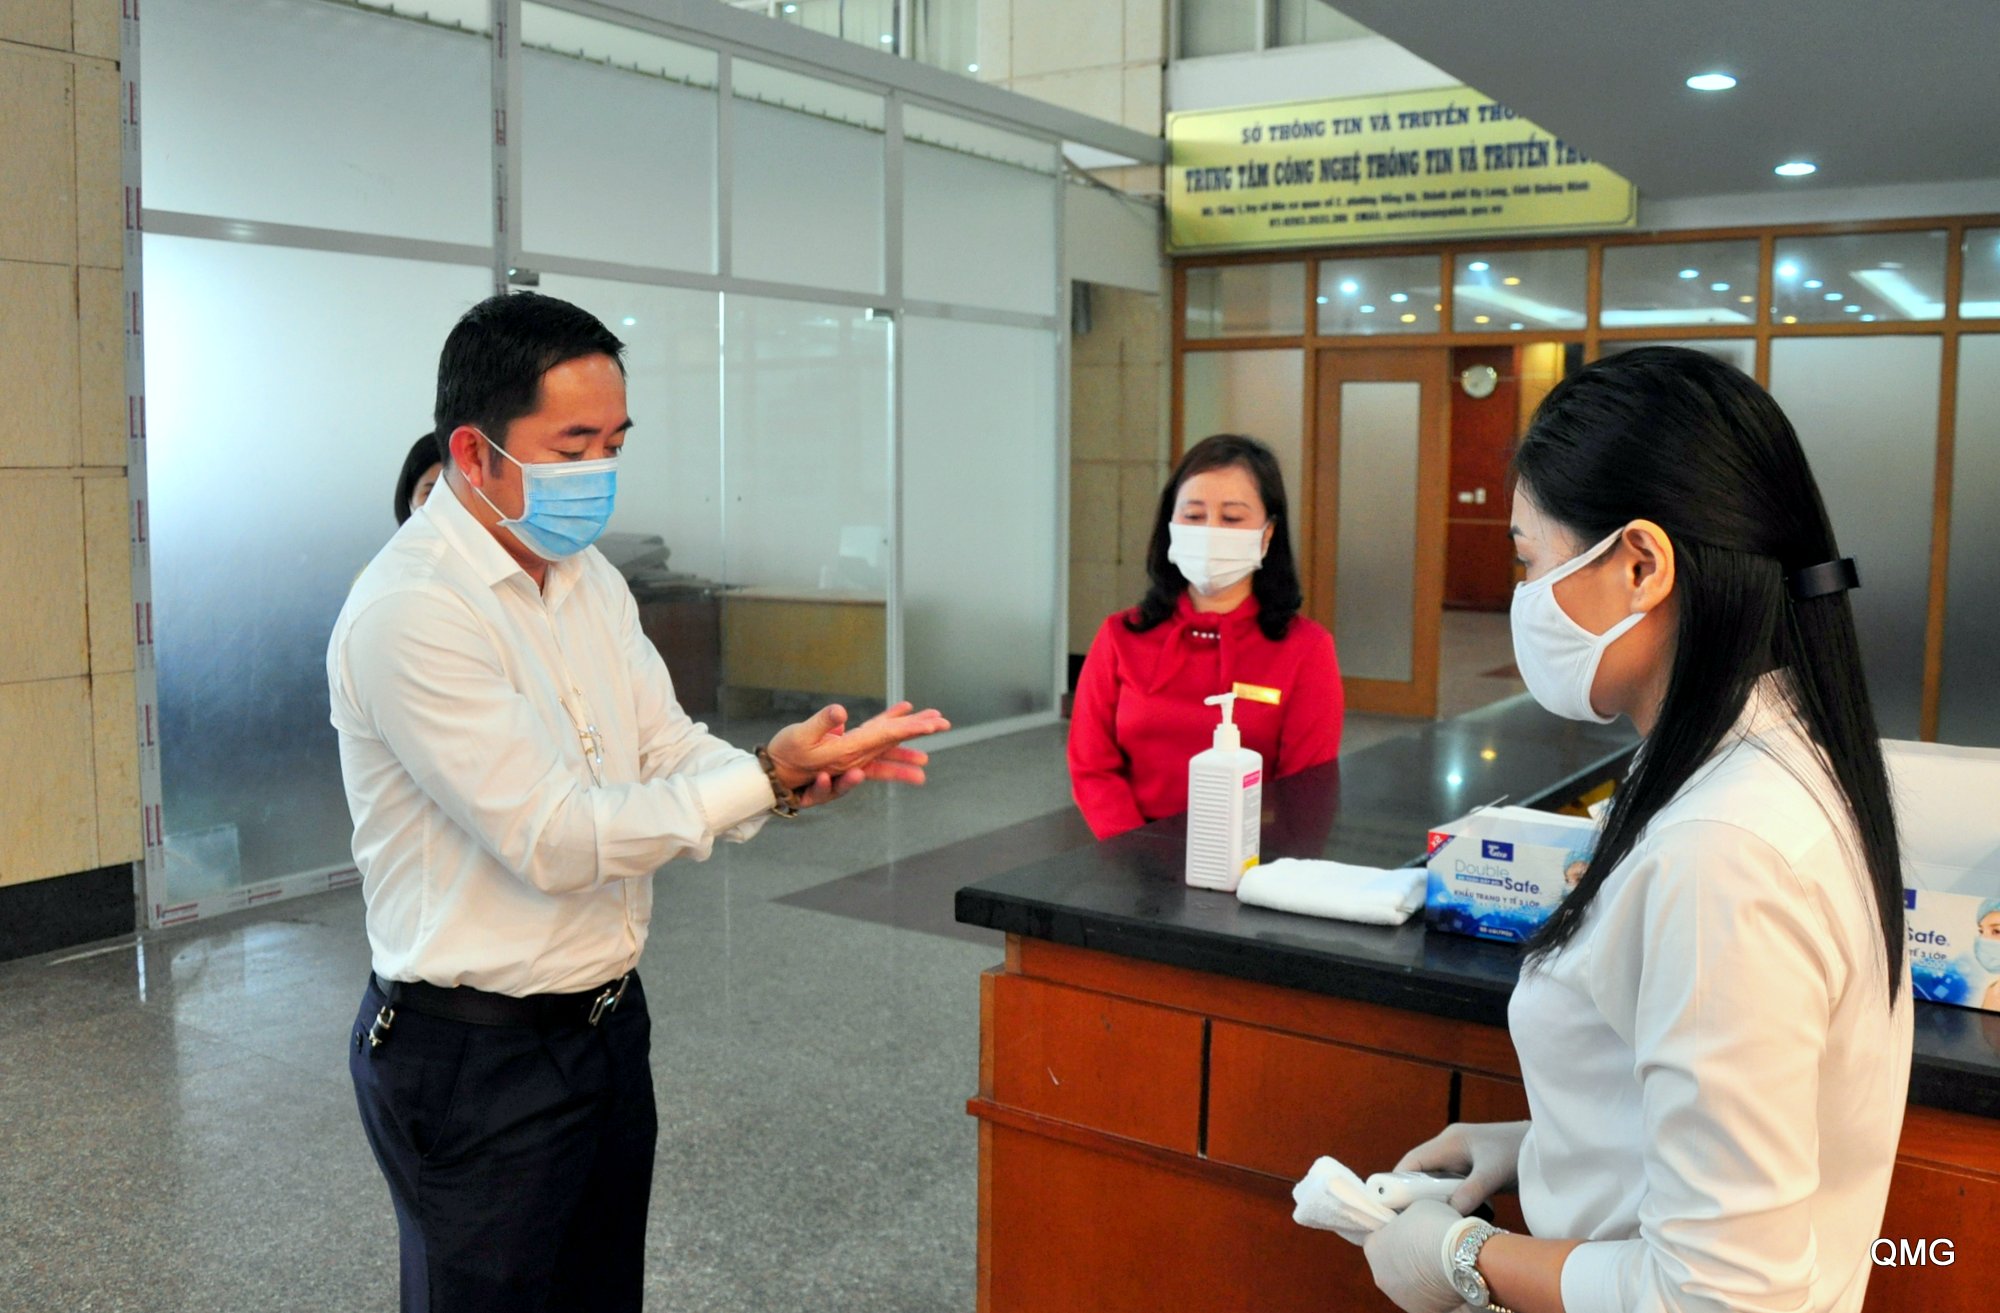 Cán bộ, công chức thực hiện nghiêm túc việc rửa tay bằng dung dịch sát khuẩn trước khi vào trụ sở làm việc.